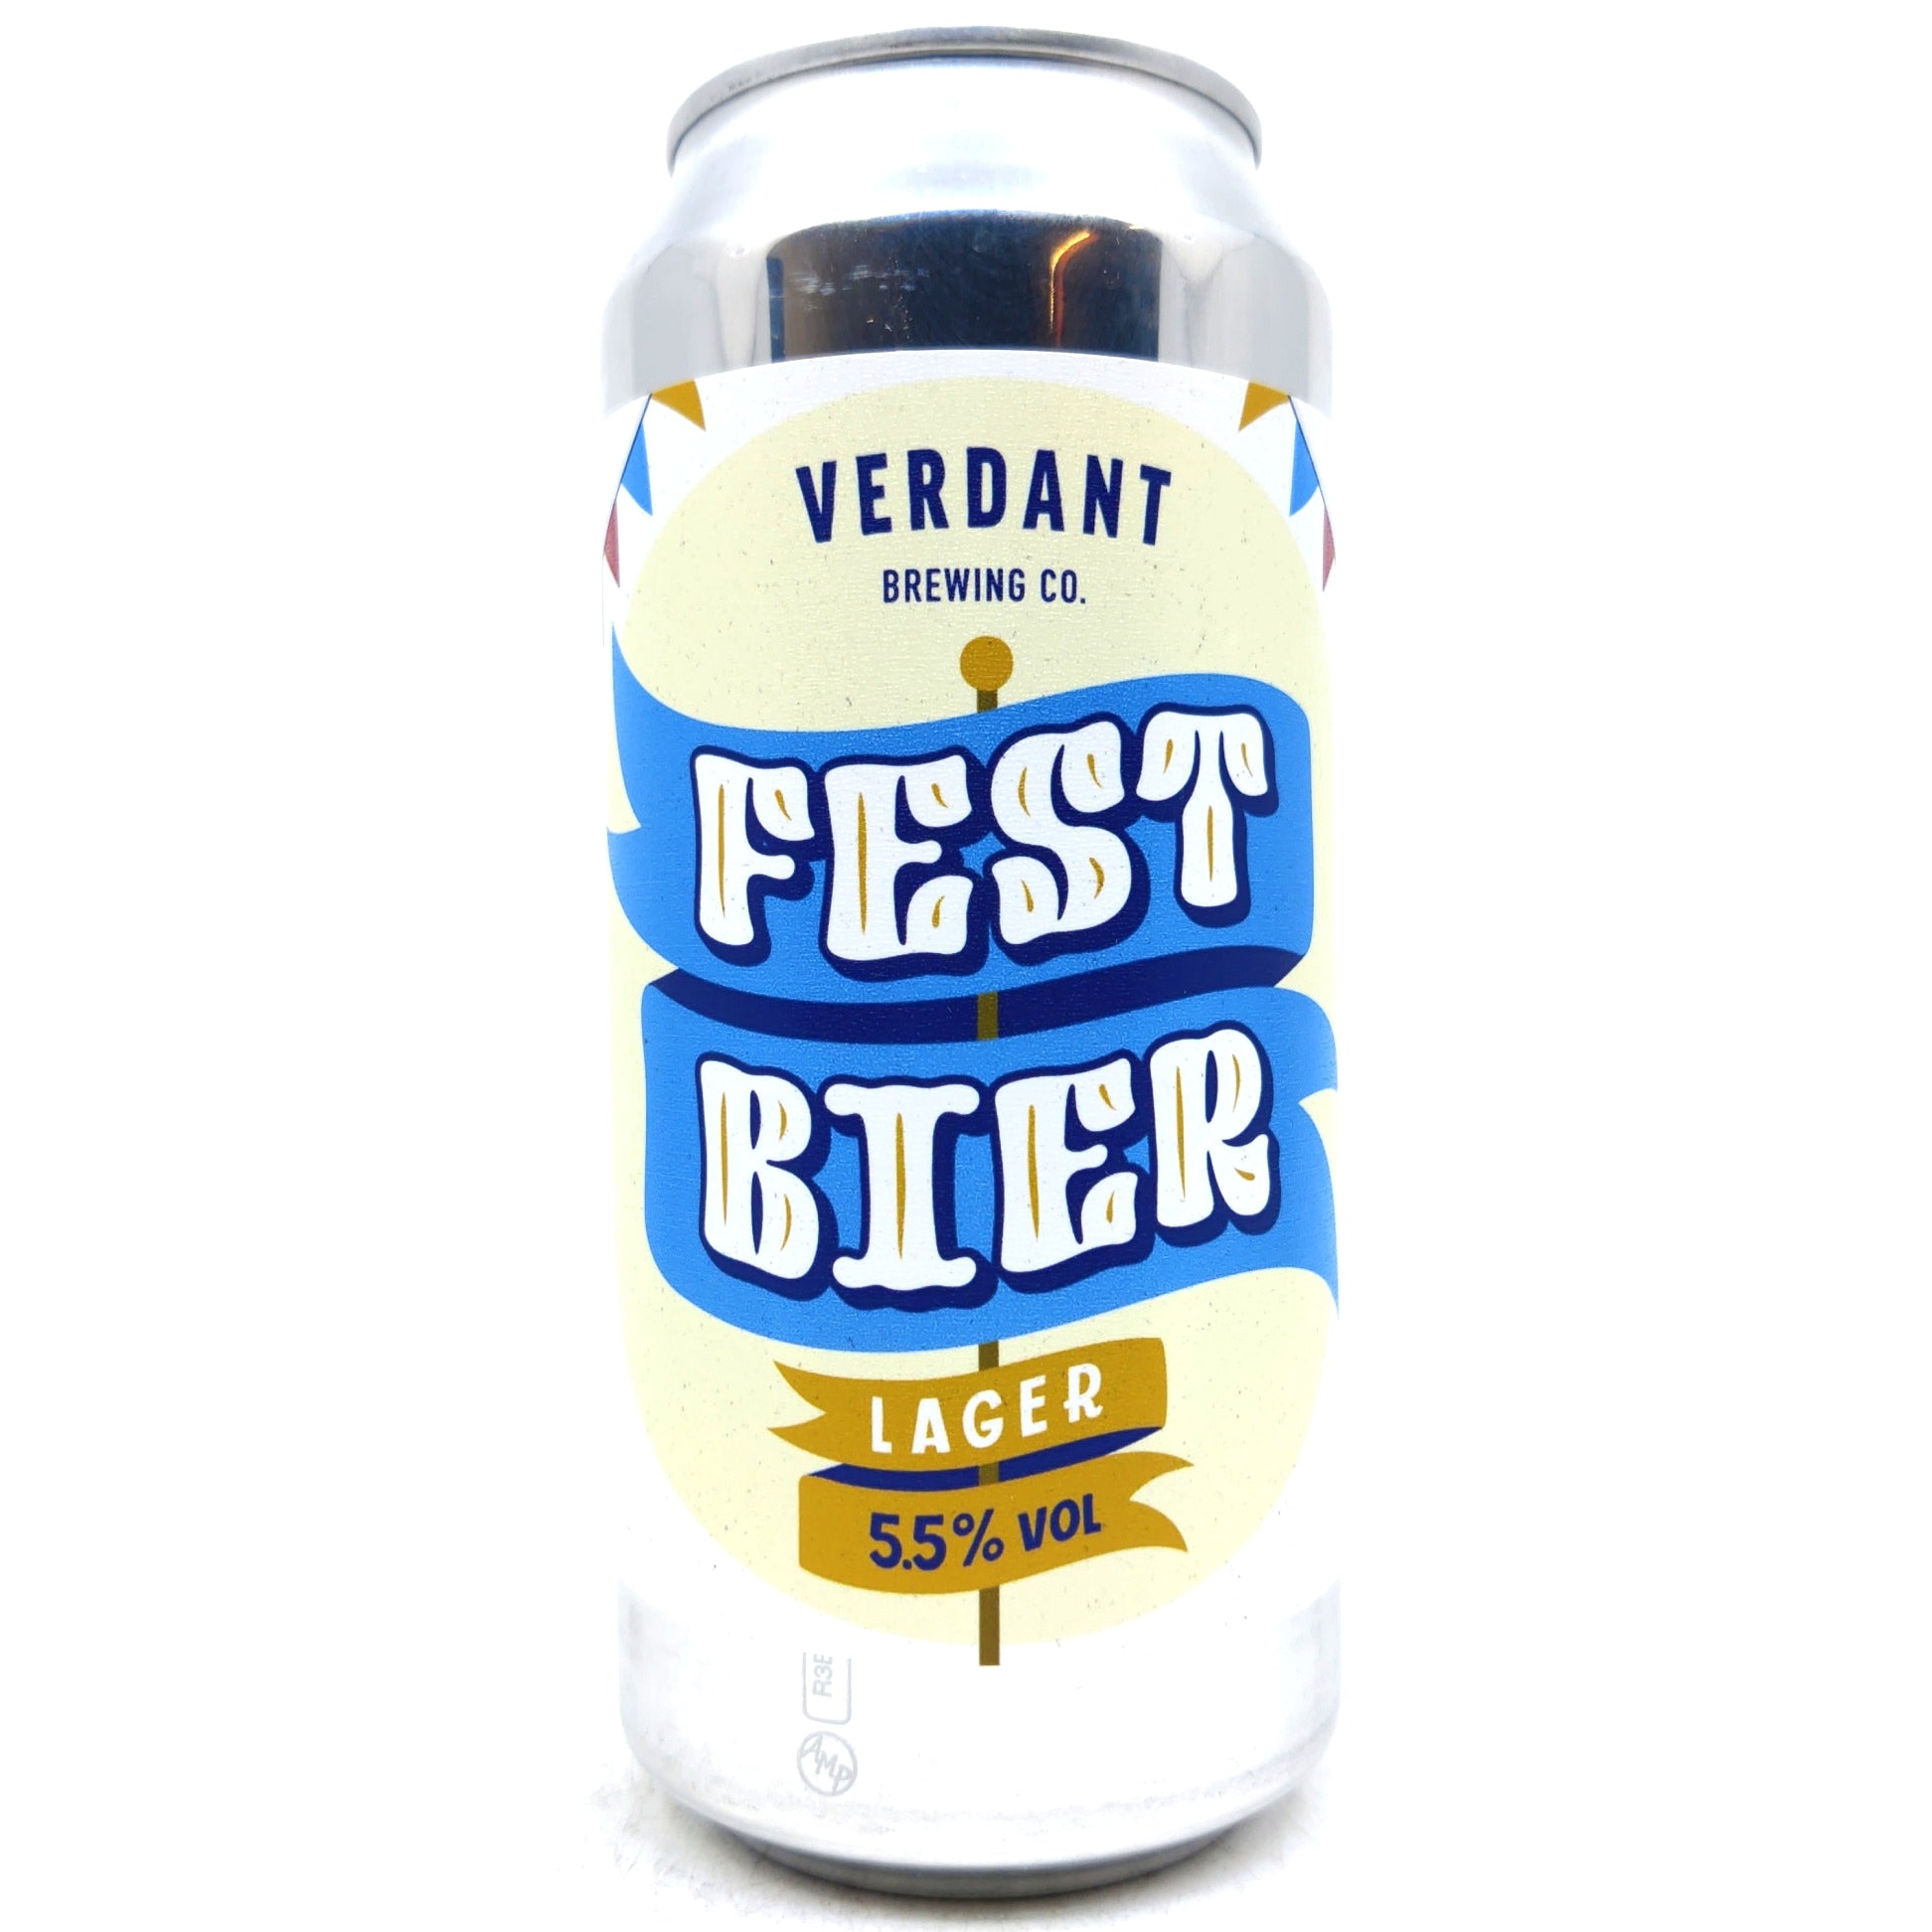 Verdant Festbier Lager 5.5% (440ml can)-Hop Burns & Black